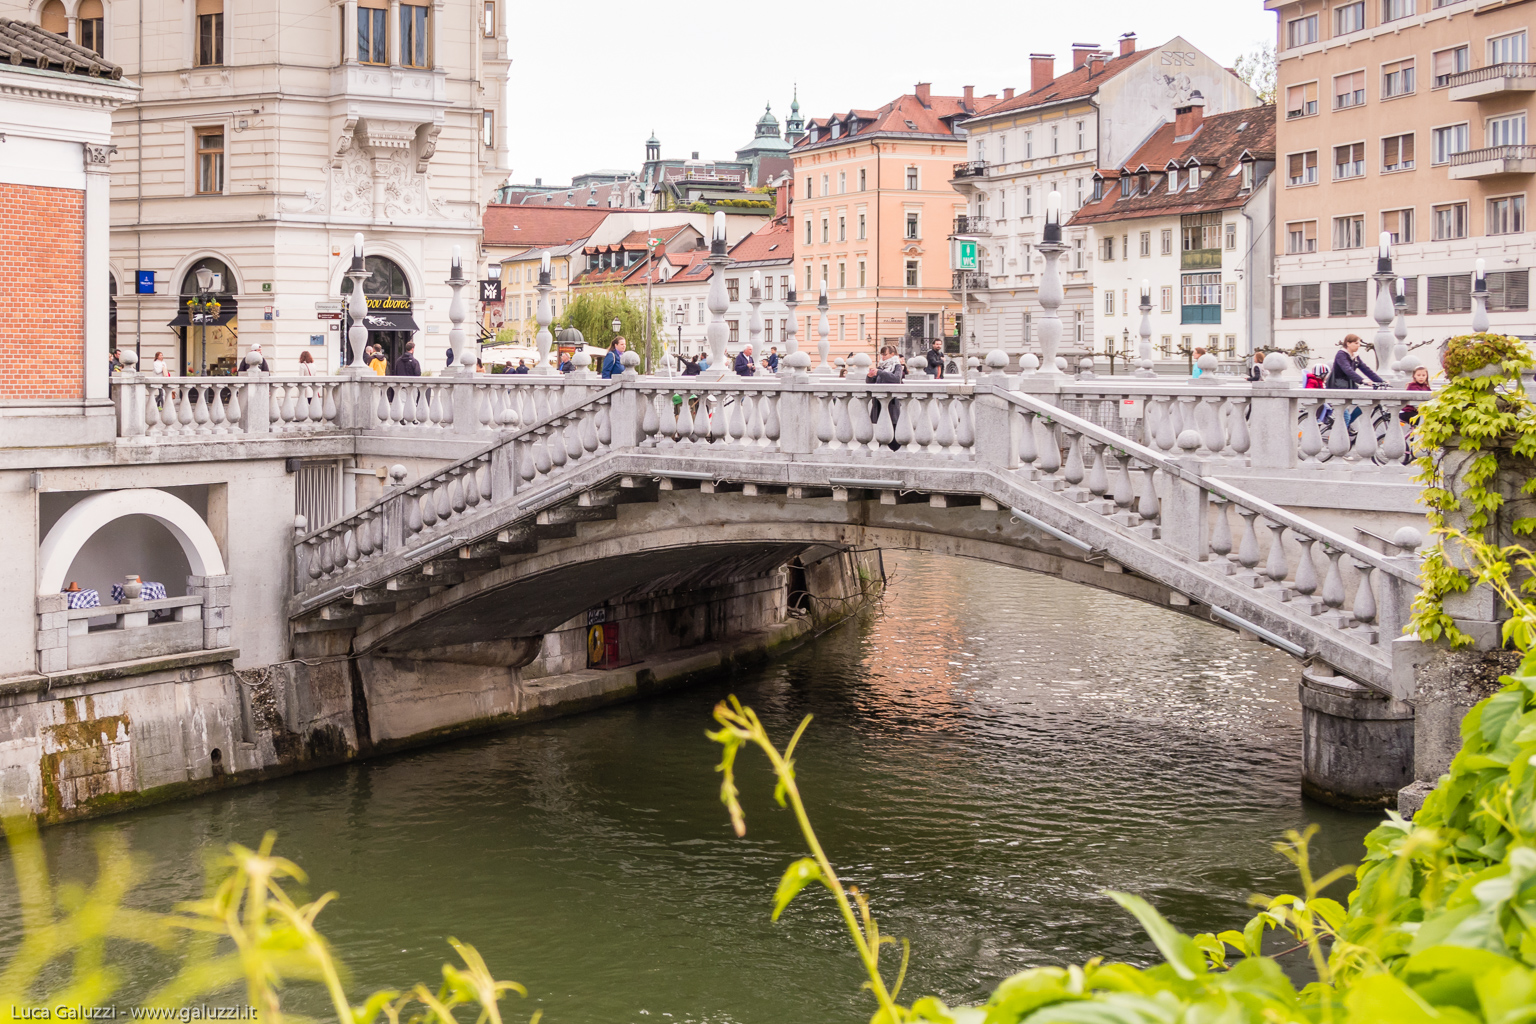 Tromostovje, il triplo ponte è un gruppo di tre ponti sul fiume Ljubljanica